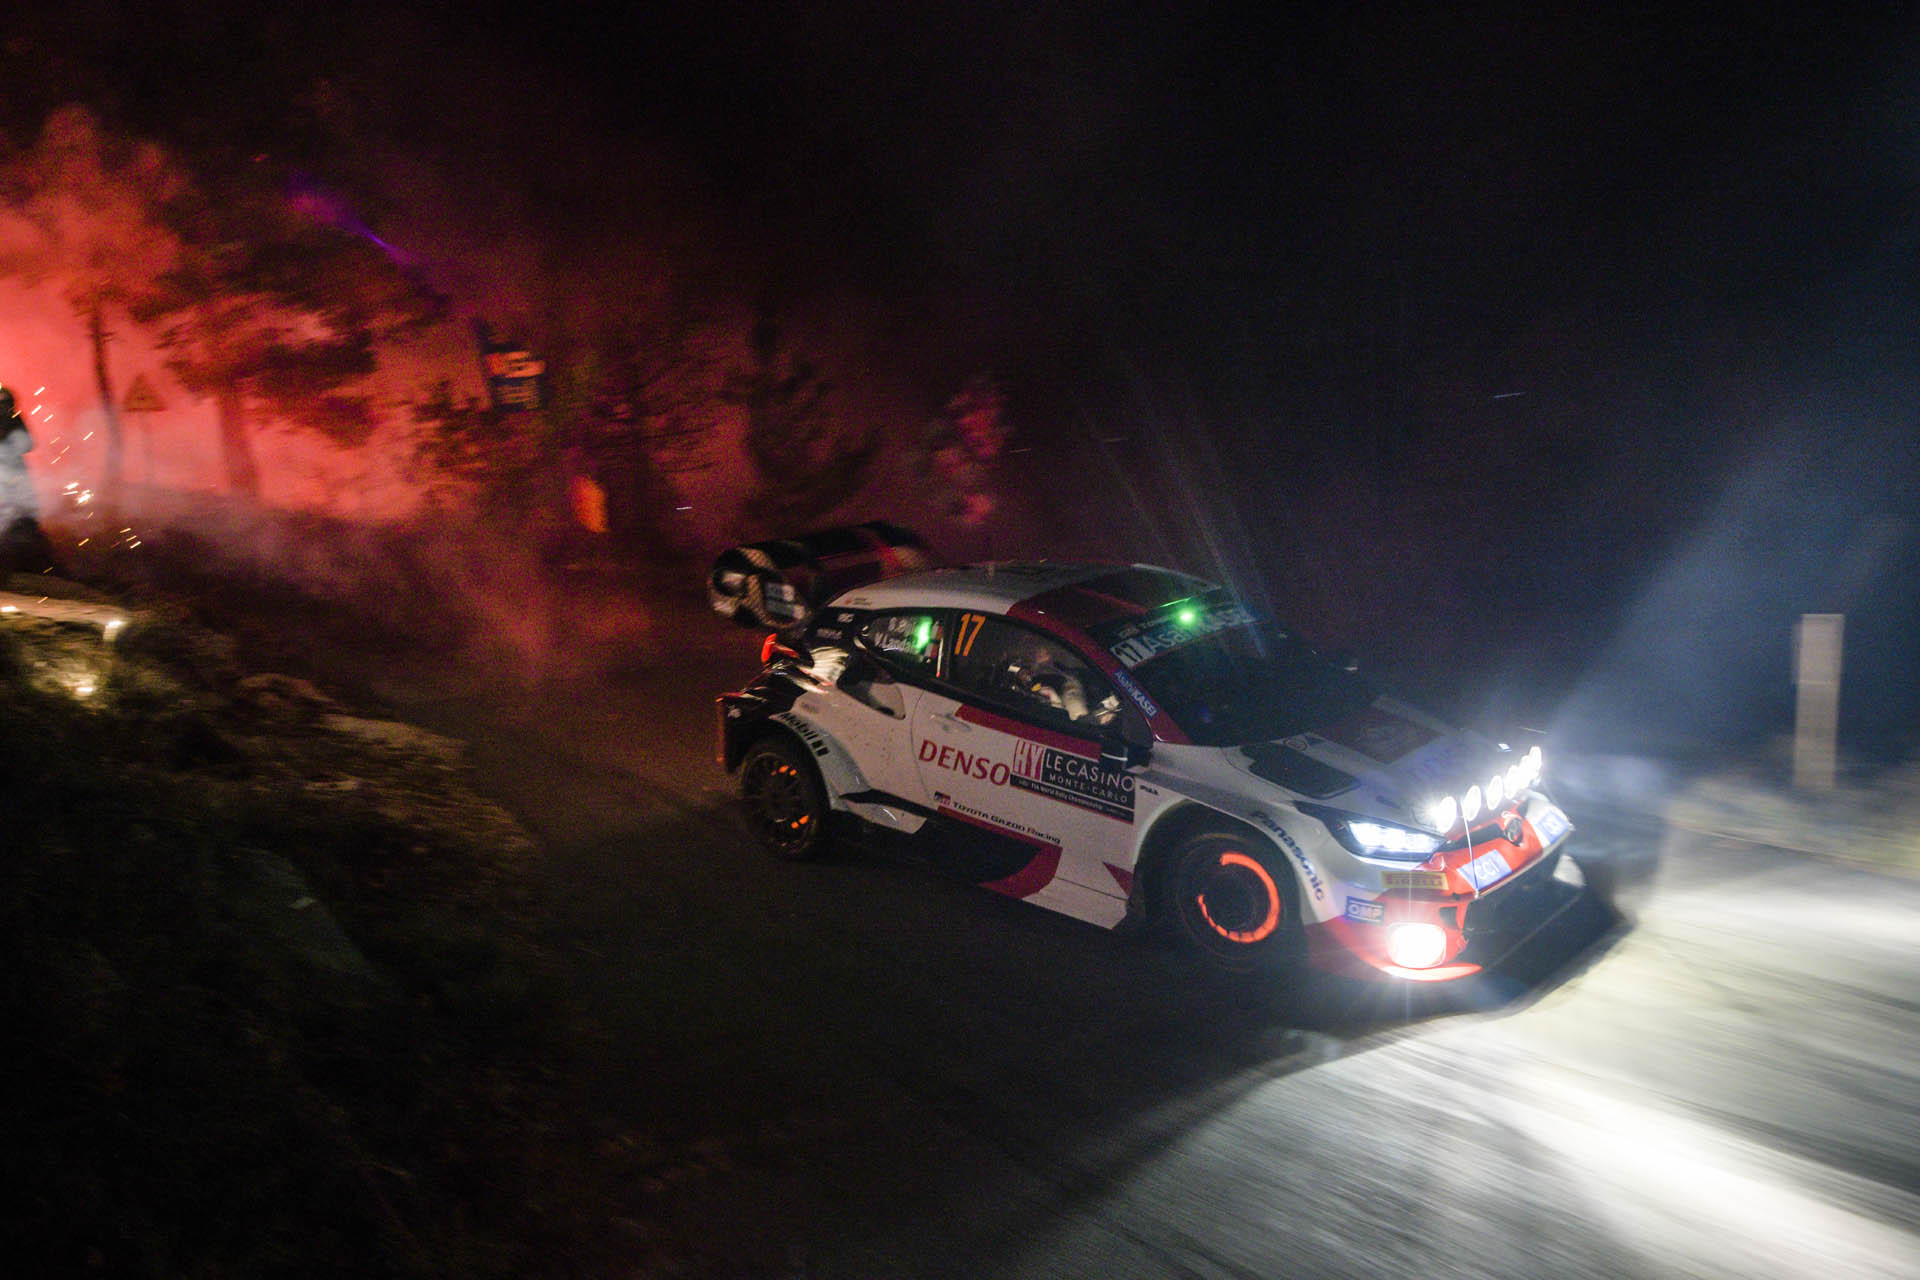 WRC - Sebastien Ogier (Toyota), Ράλλυ Μόντε Κάρλο